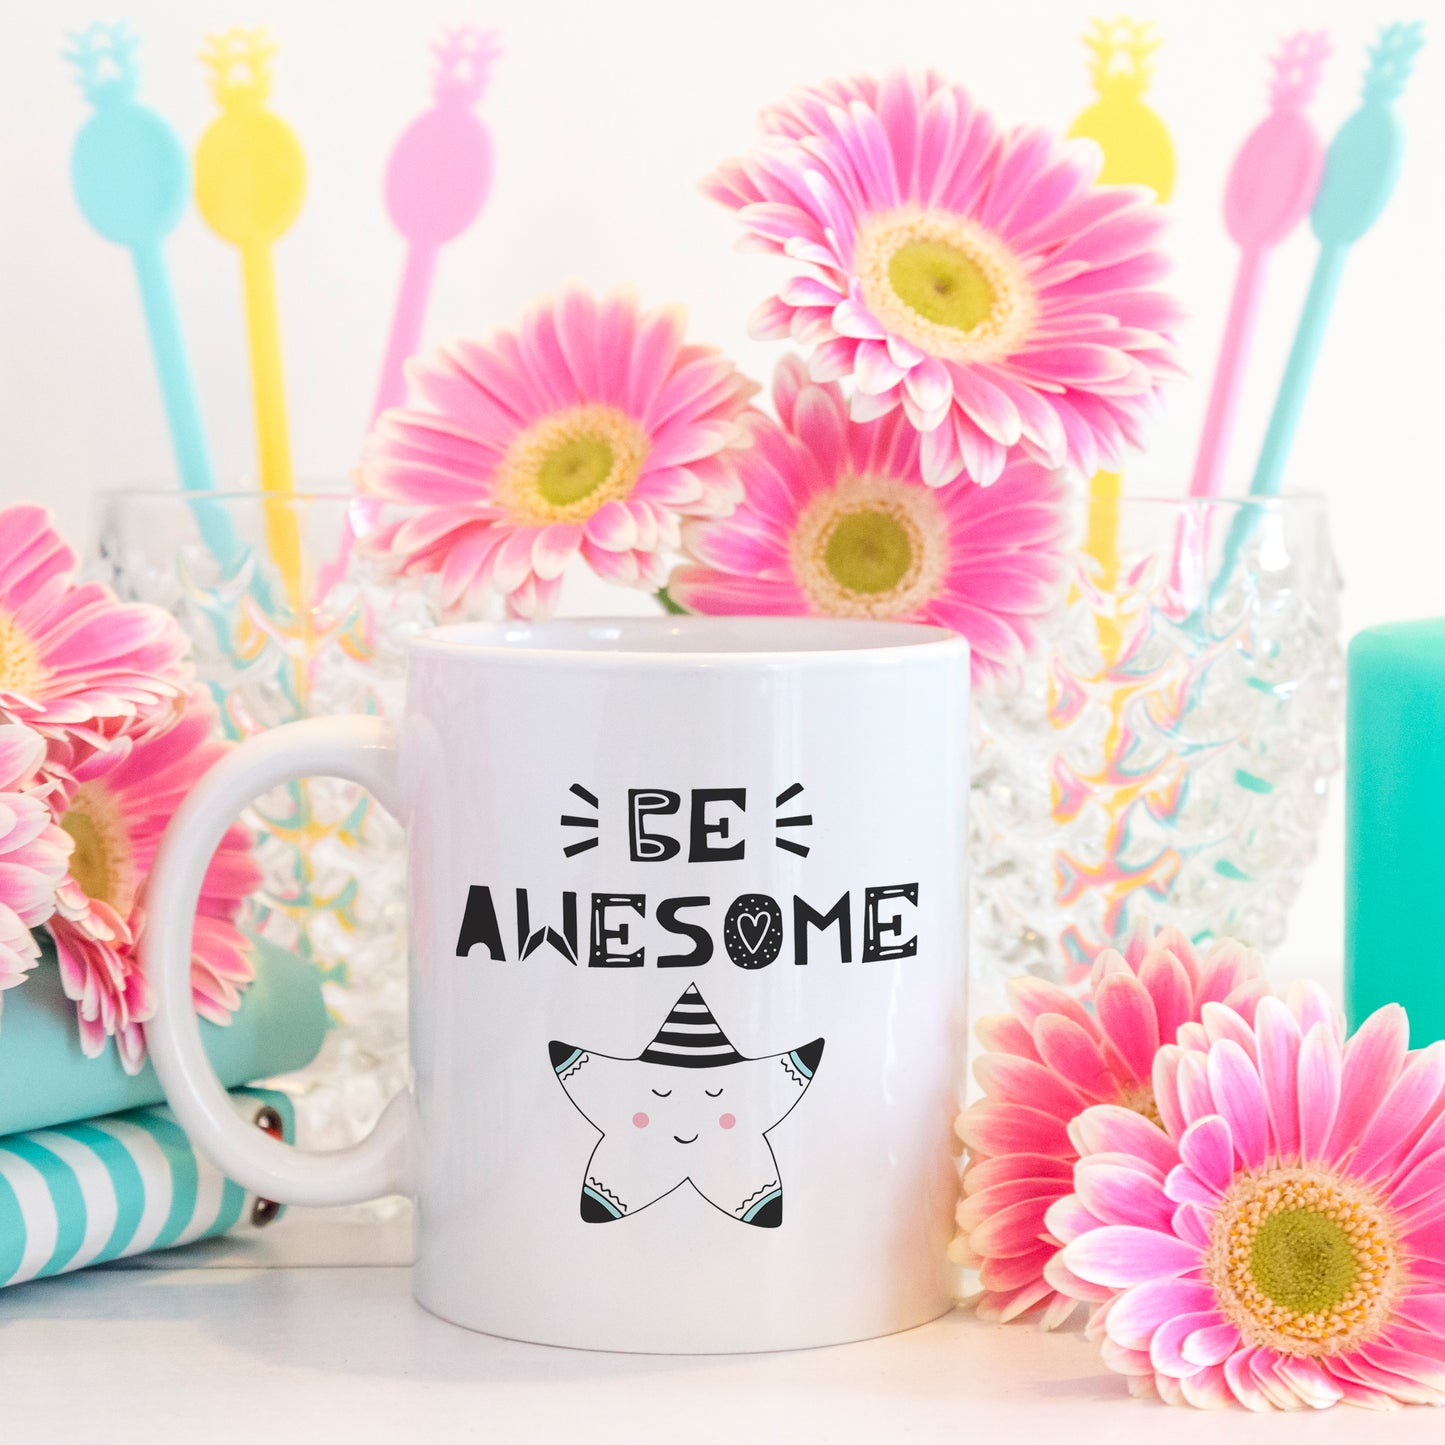 Be awesome | Ceramic mug